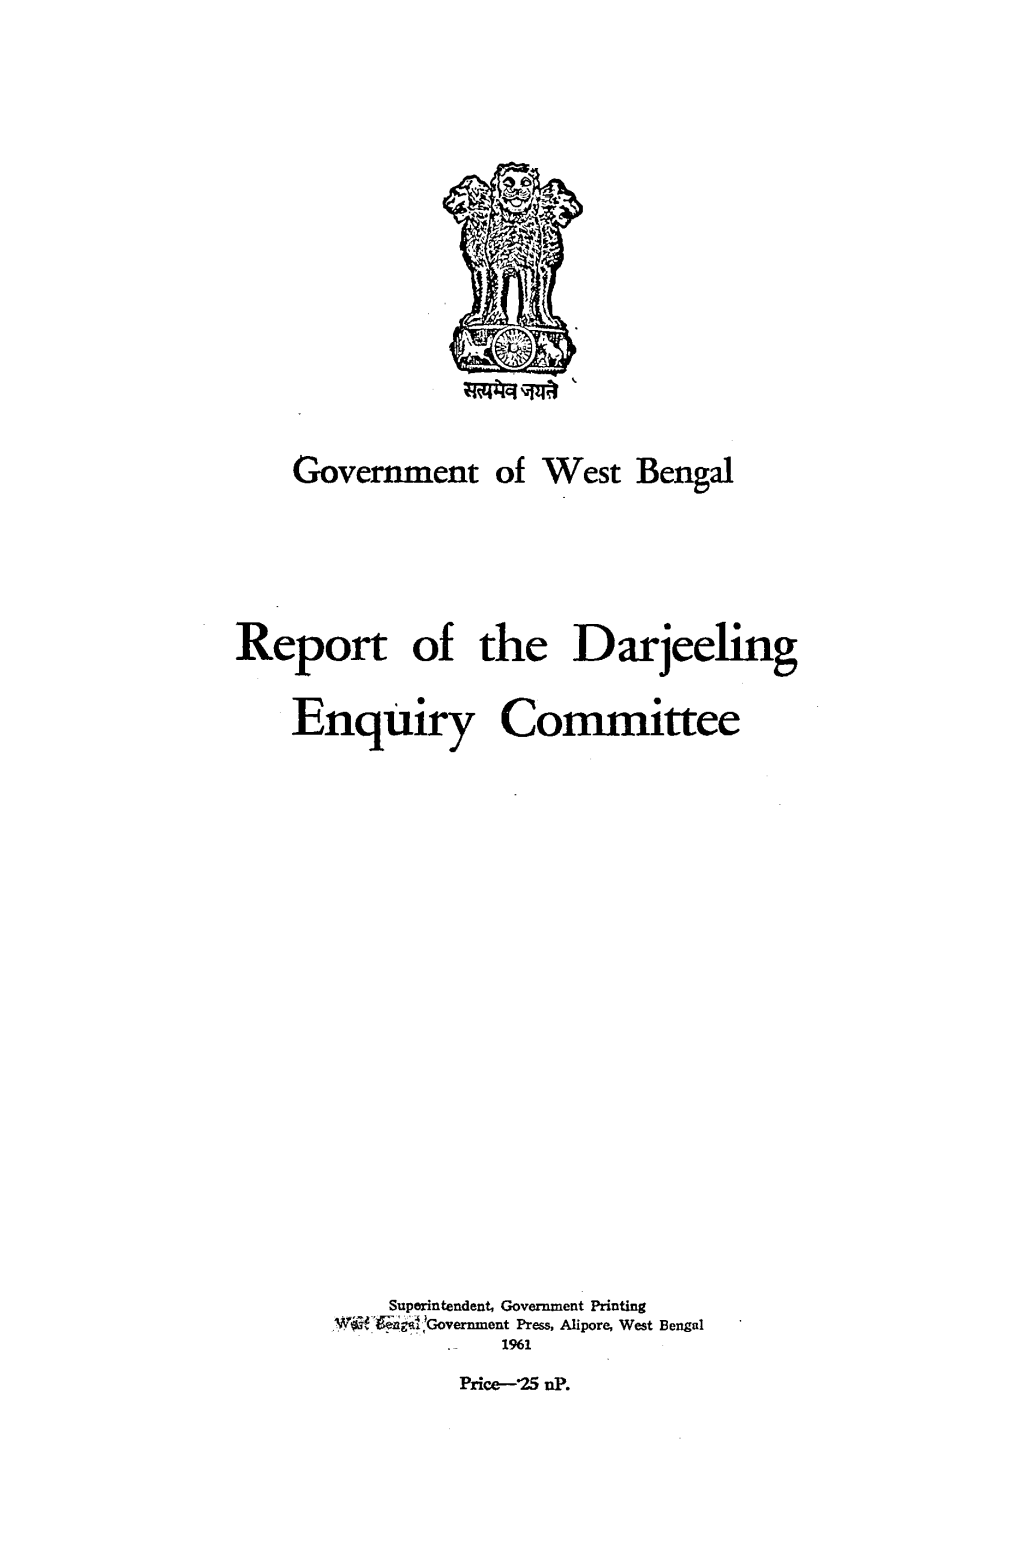 Report of the Darjeeling Enquiry Committee